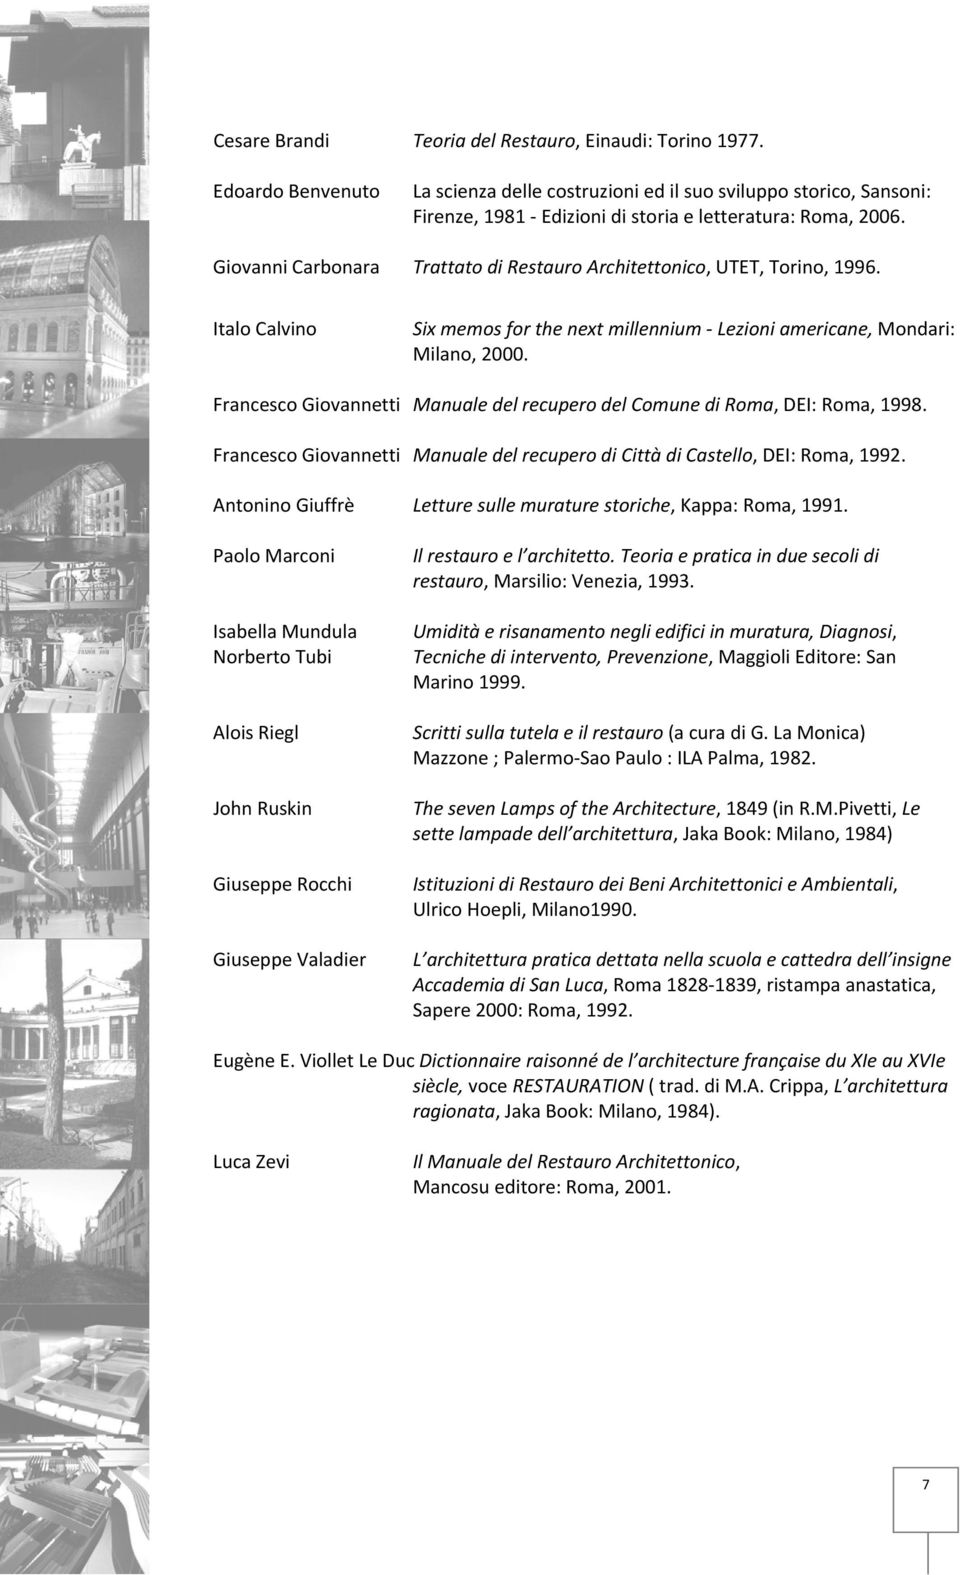 Francesco Giovannetti Manuale del recupero del Comune di Roma, DEI: Roma, 1998. Francesco Giovannetti Manuale del recupero di Città di Castello, DEI: Roma, 1992.